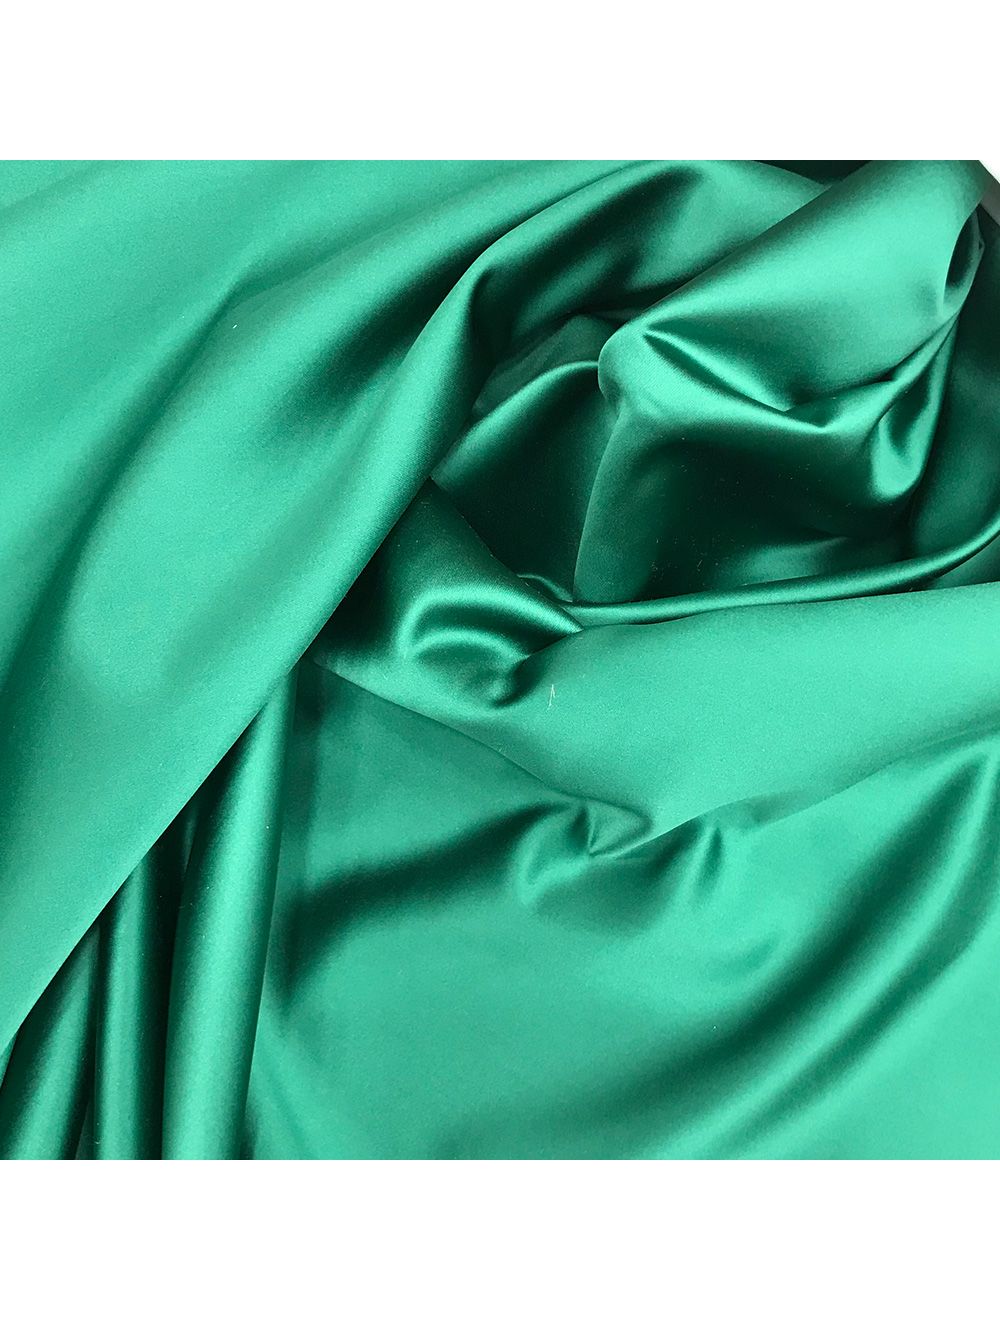 Bridal Satin Fabric | Saroj Fabrics